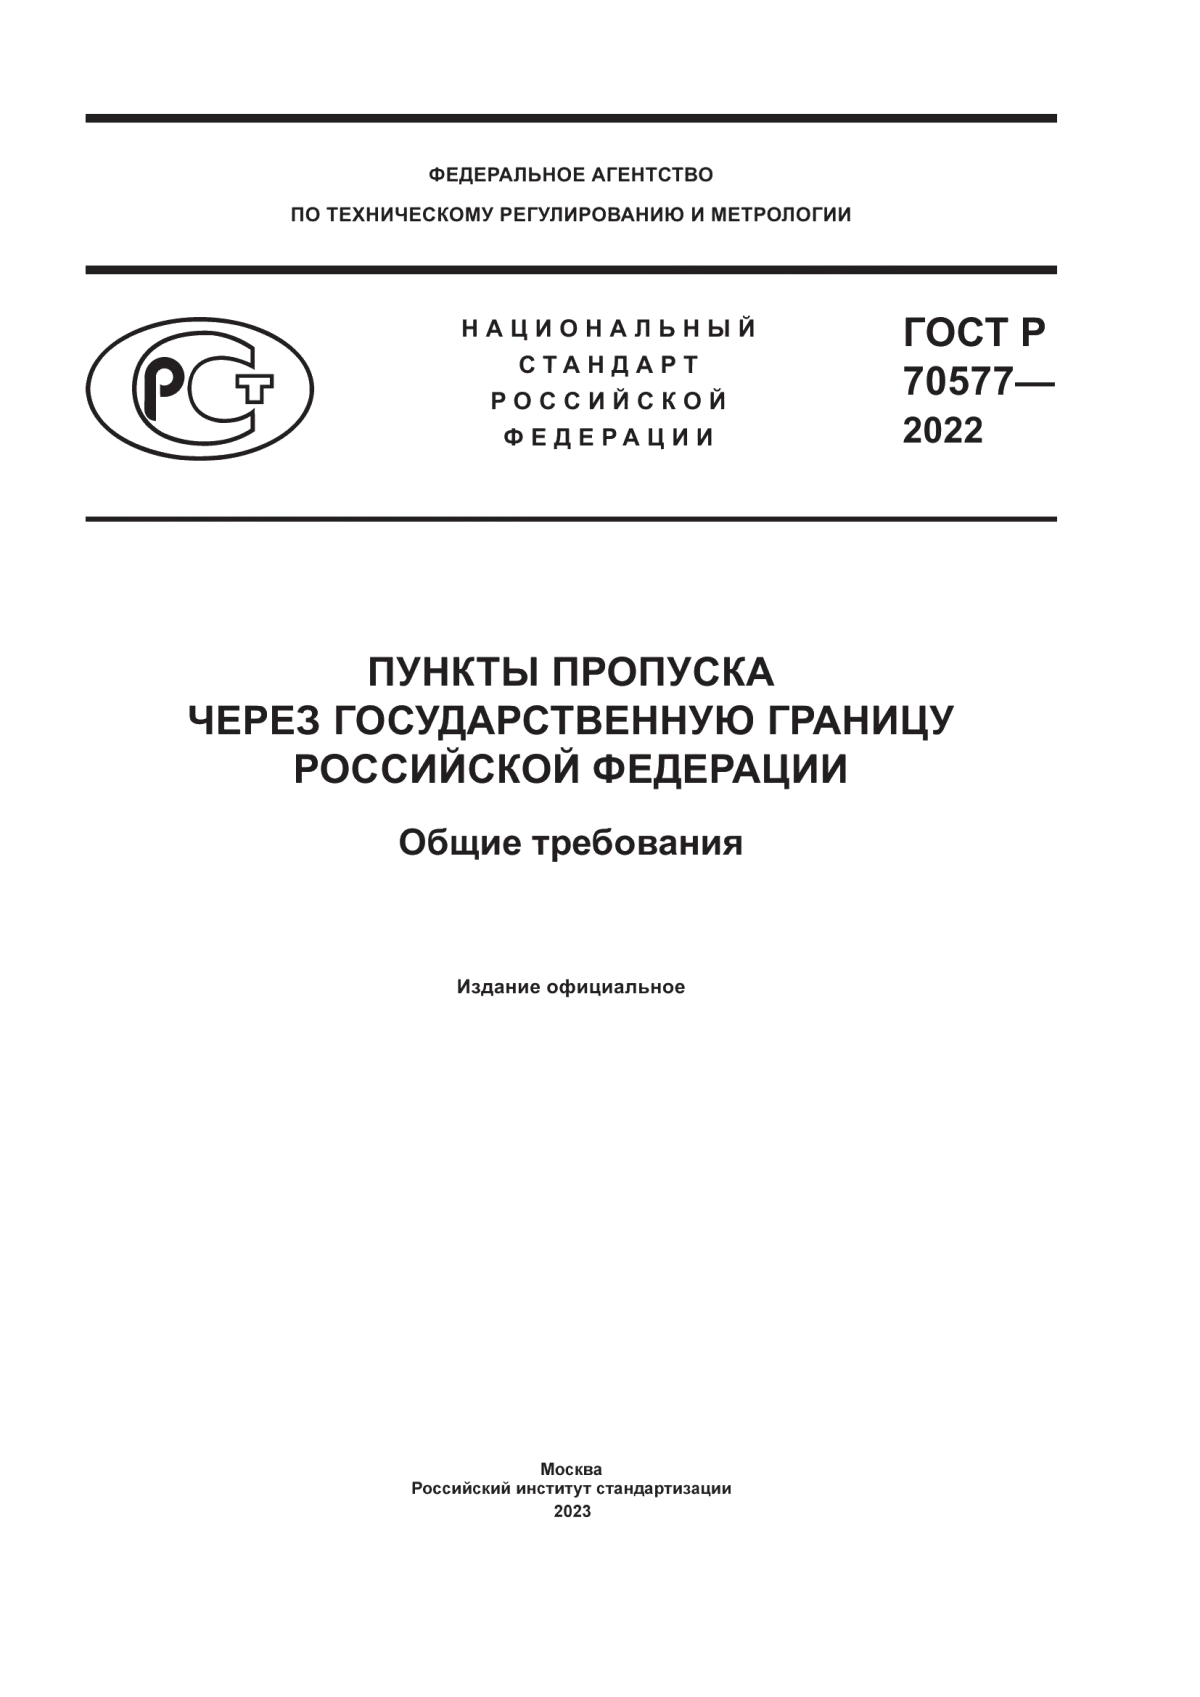 ГОСТ Р 70577-2022 Пункты пропуска через государственную границу Российской Федерации. Общие требования